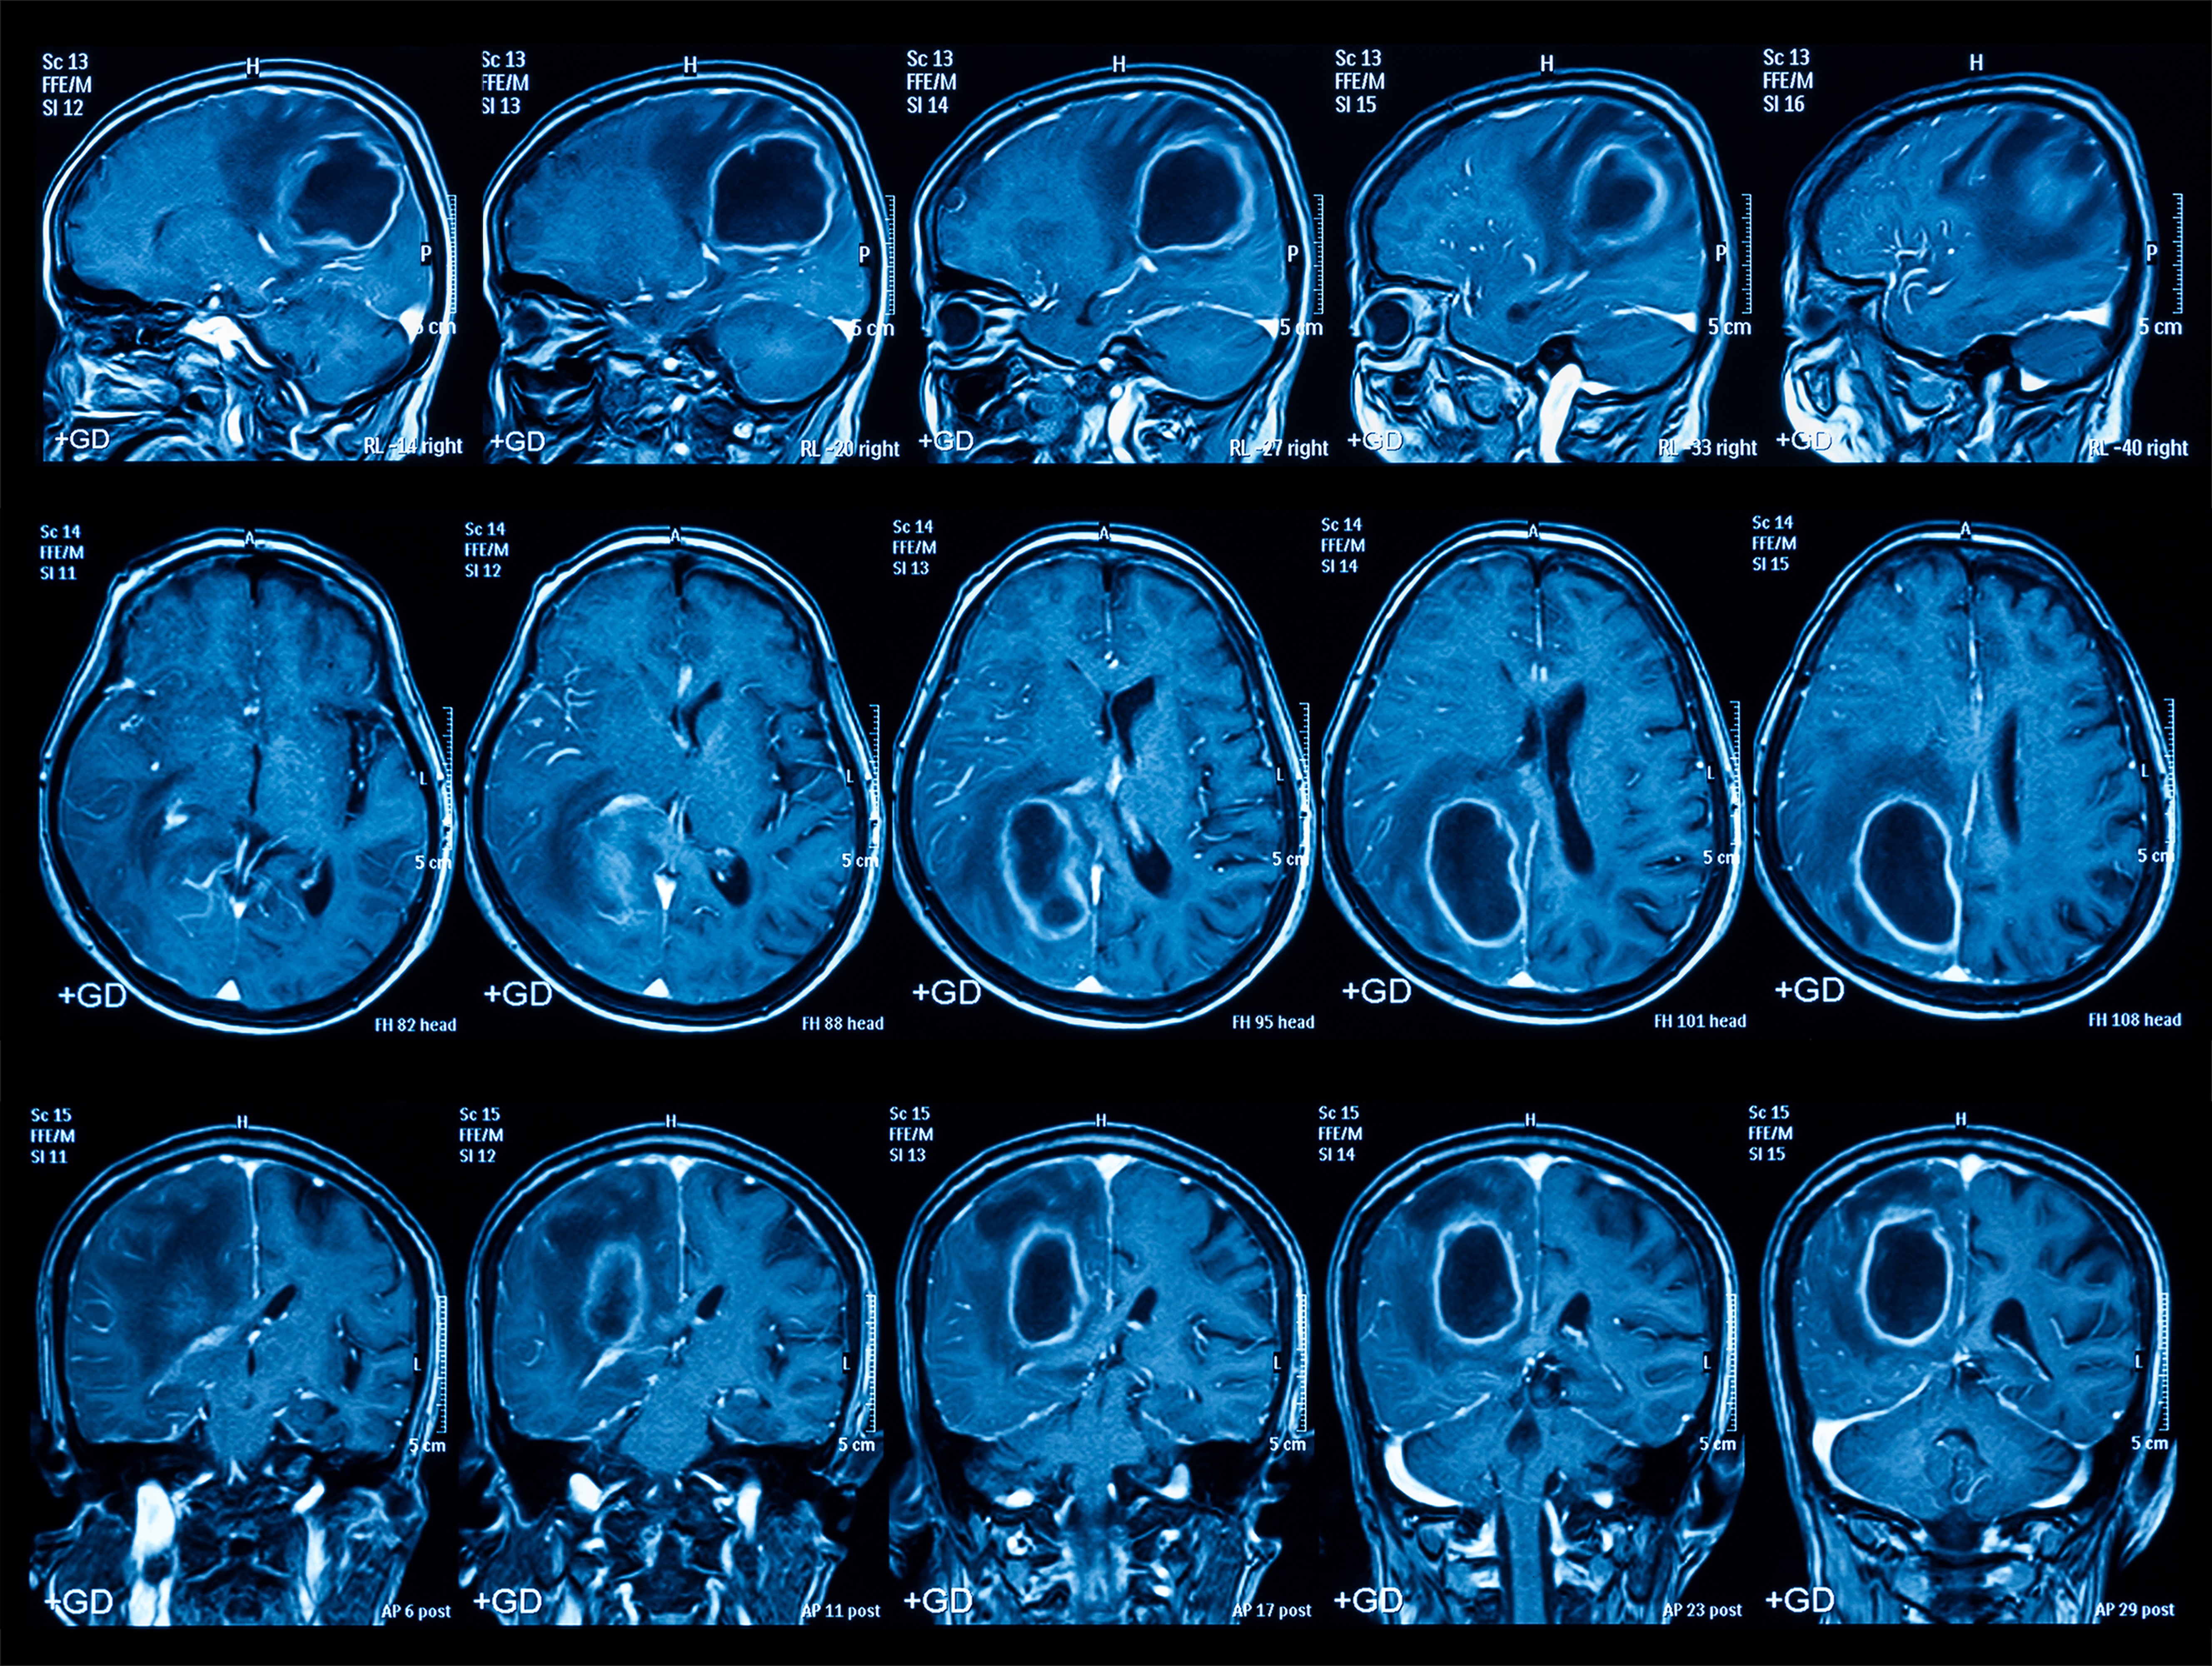 Кт головы стоя. Опухоль головного мозга снимок мрт. Опухоли головного мозга MRT. Кт томограмма головного мозга. Снимки мрт головного мозга с опухолью.